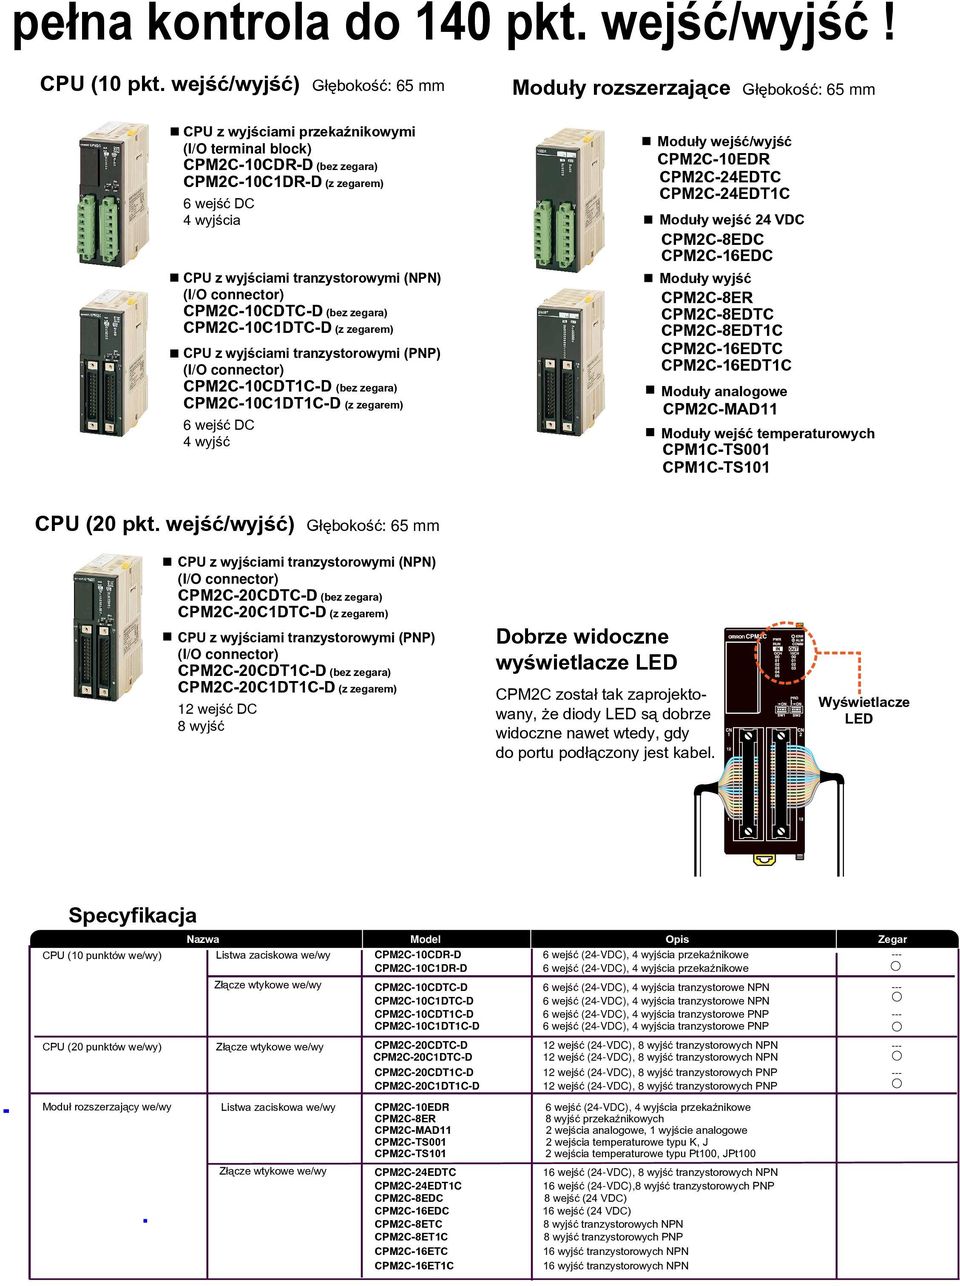 (I/O connector) CPM2C-10CDTC-D (bez zegara) CPM2C-10C1DTC-D (z zegarem) CPU z wyjœciami tranzystorowymi (PNP) (I/O connector) CPM2C-10CDT1C-D (bez zegara) CPM2C-10C1DT1C-D (z zegarem) 6 wejœæ DC 4